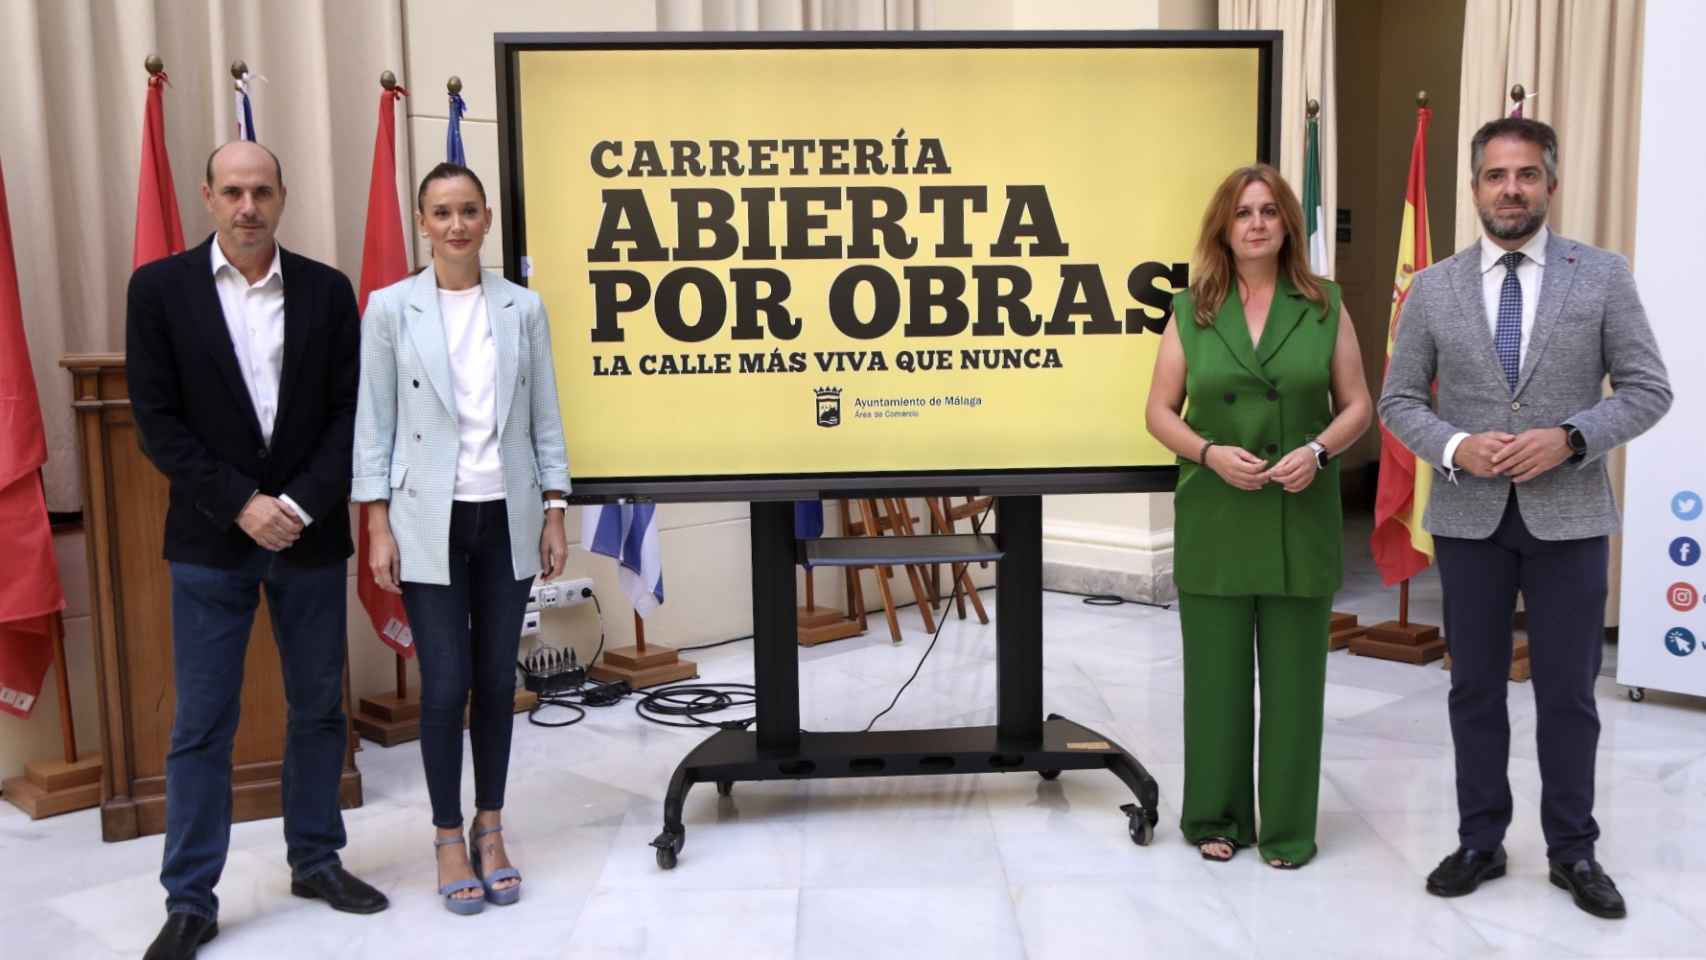 Imagen de la rueda de prensa sobre la campaña de apoyo al comercio de la calle Carretería, en Málaga.